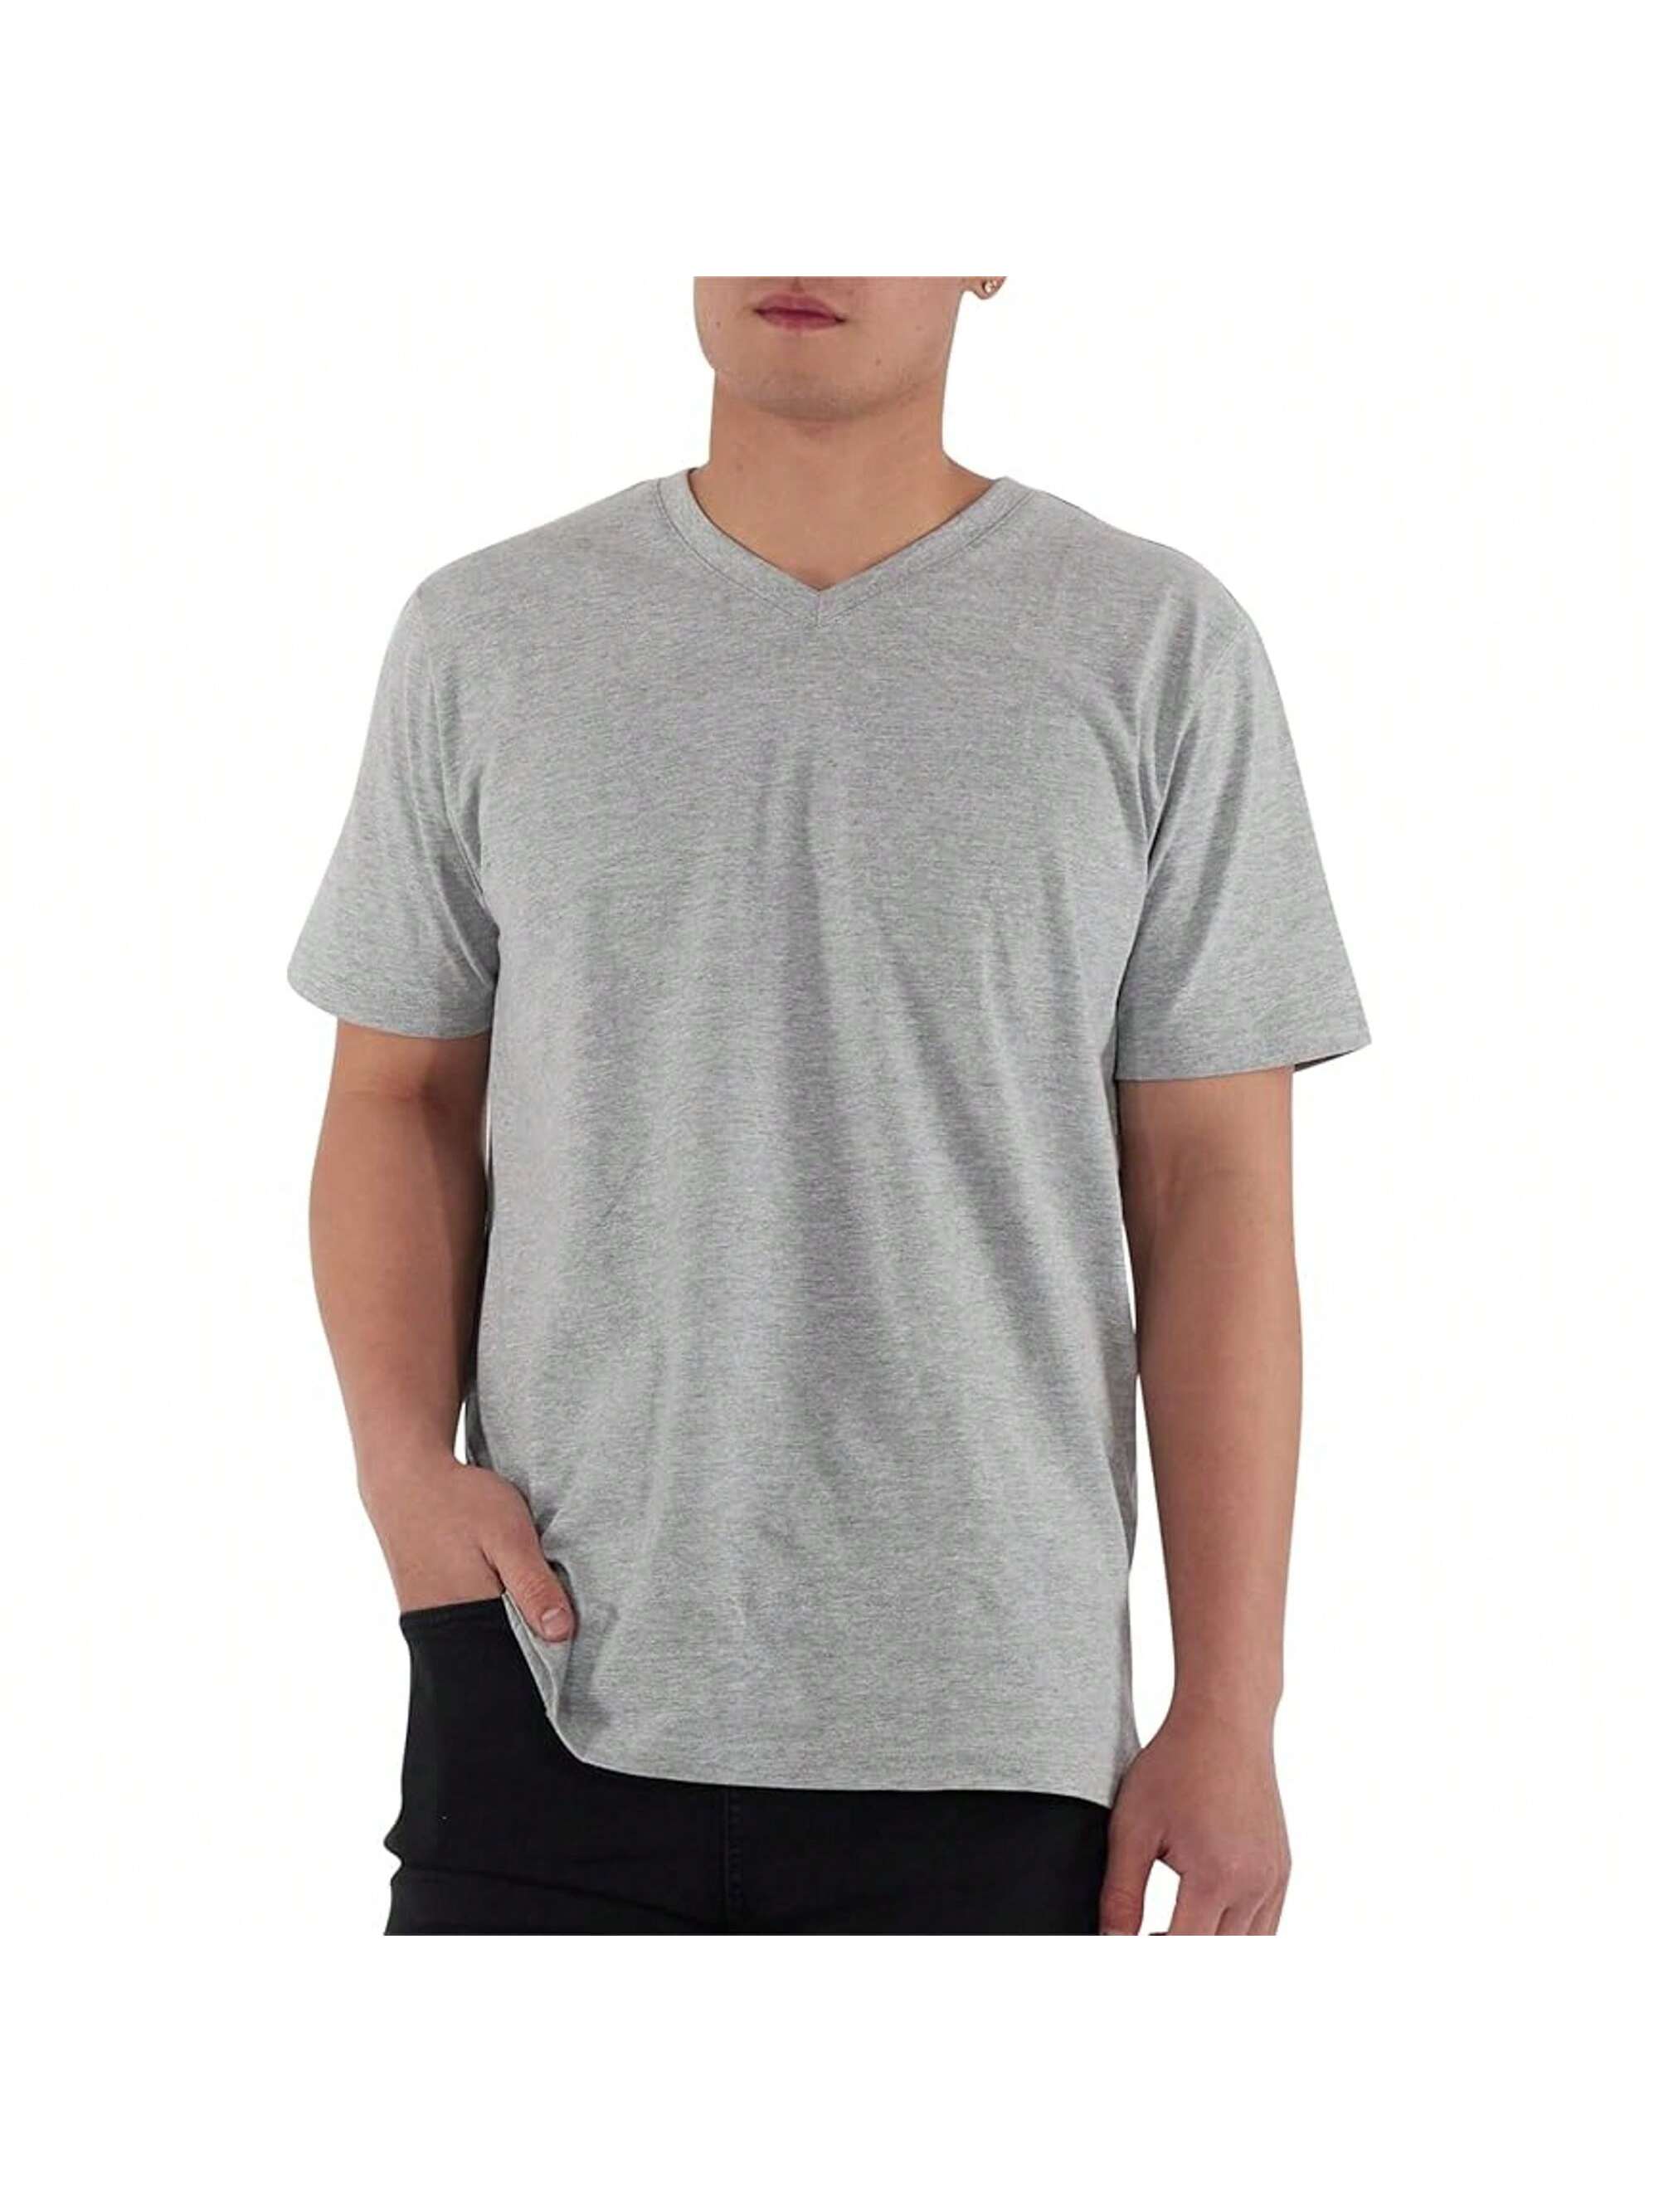 Мужская хлопковая футболка премиум-класса с v-образным вырезом Rich Cotton BLK-M, серый перчатки sherwood code v sr blk red 13